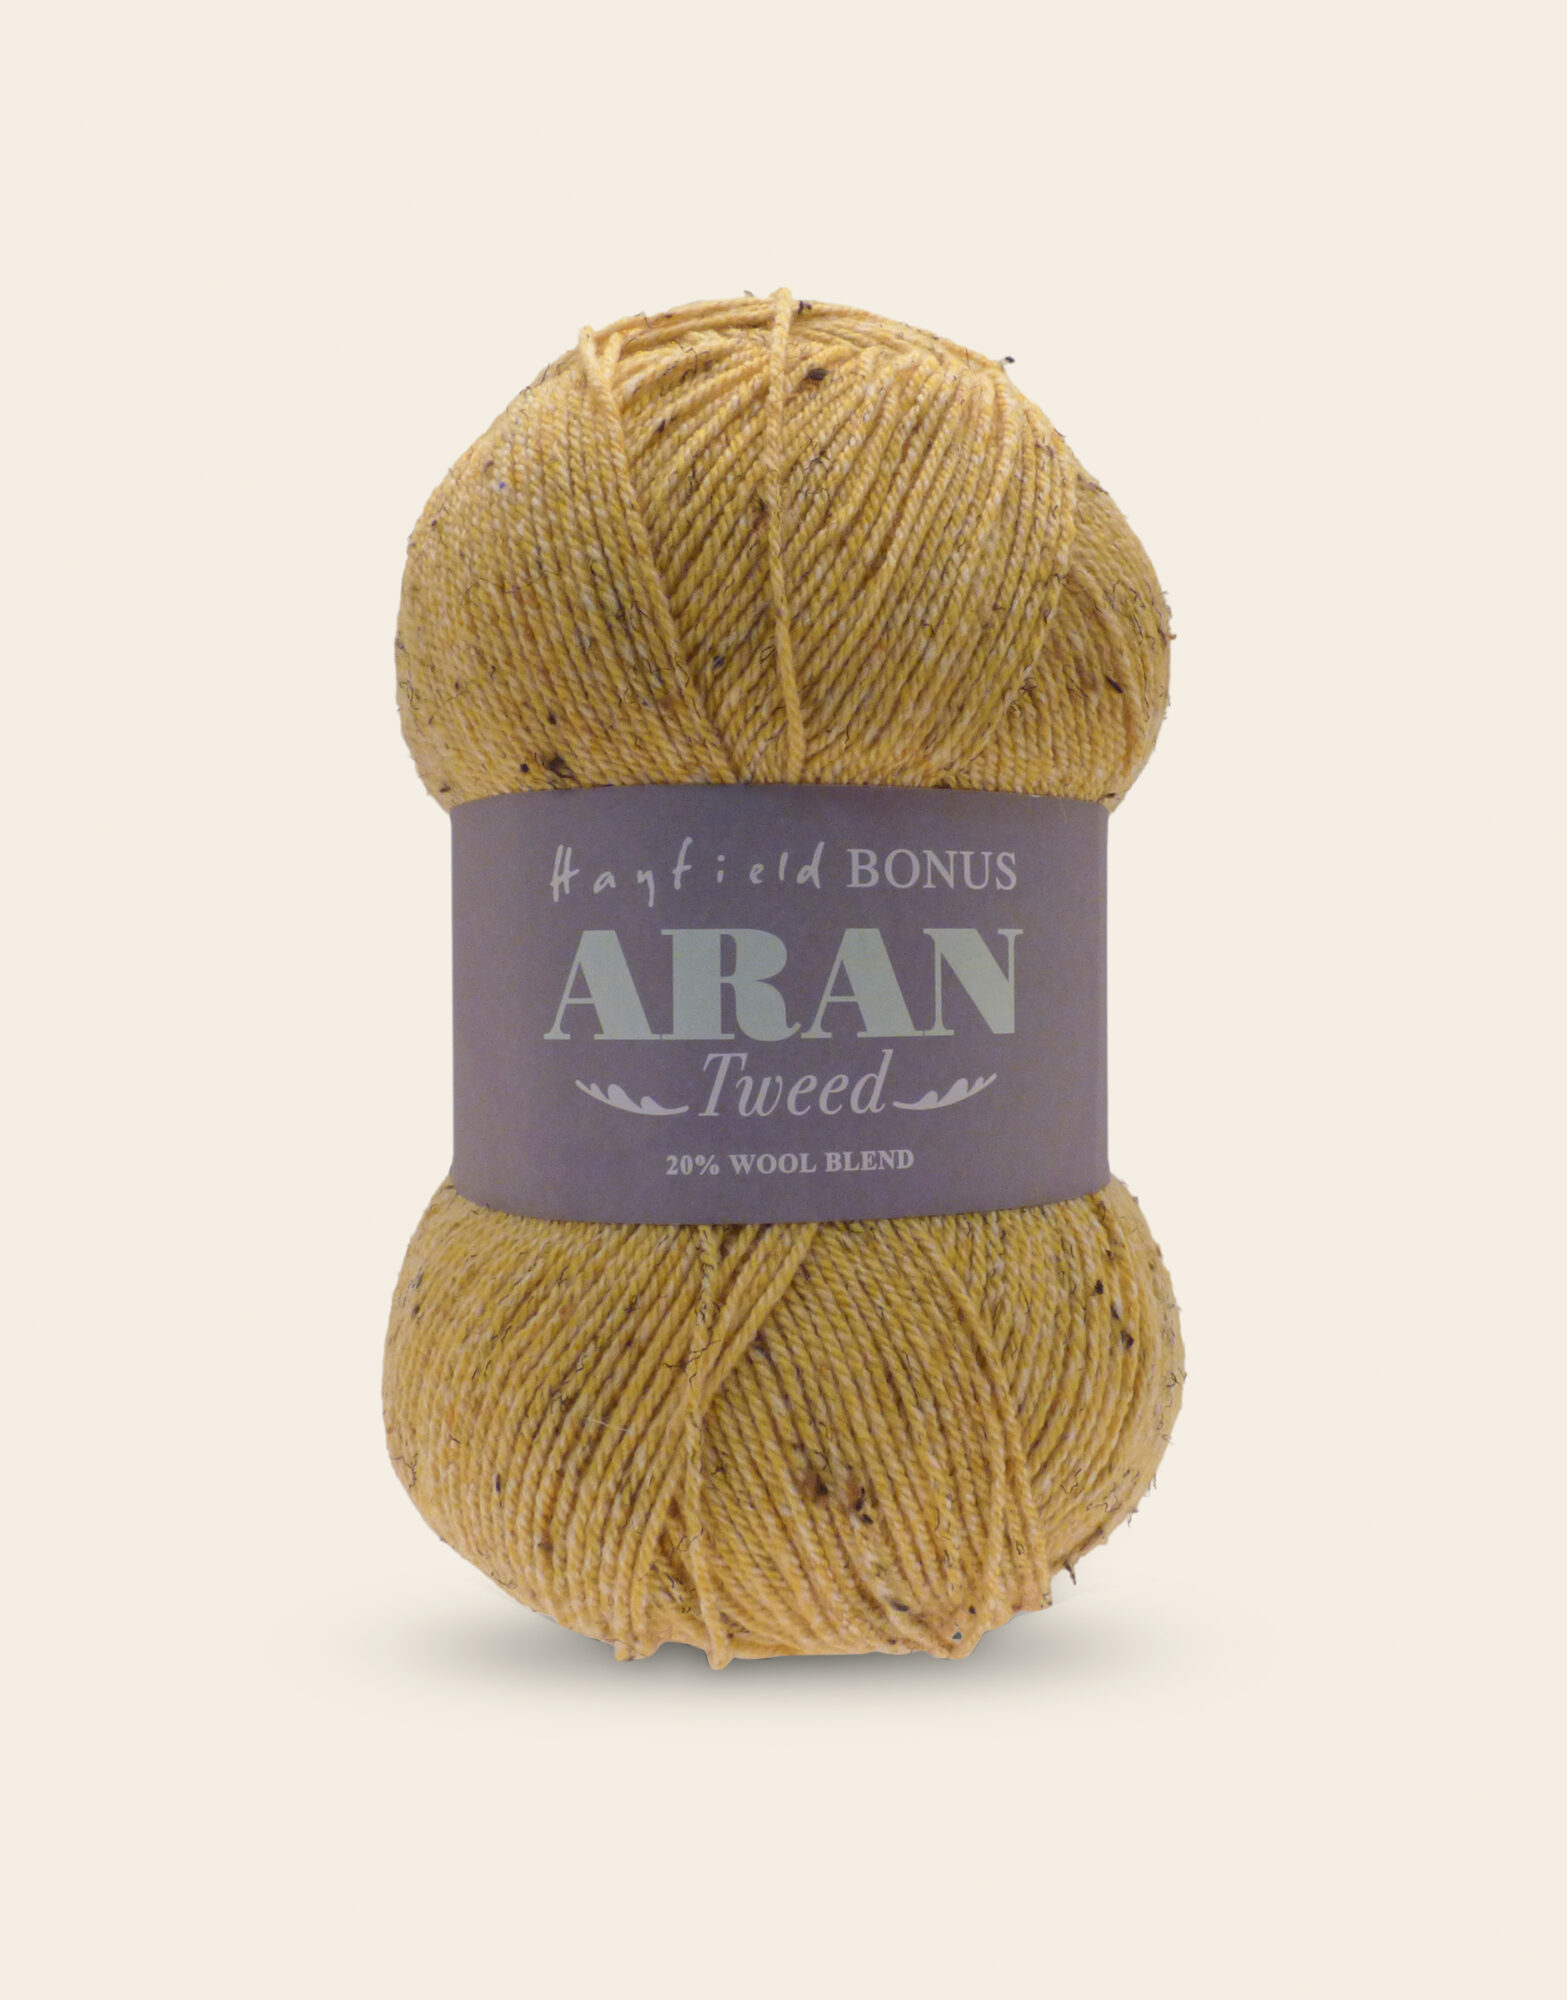 hayfield-bonus-tweed-aran-with-wool